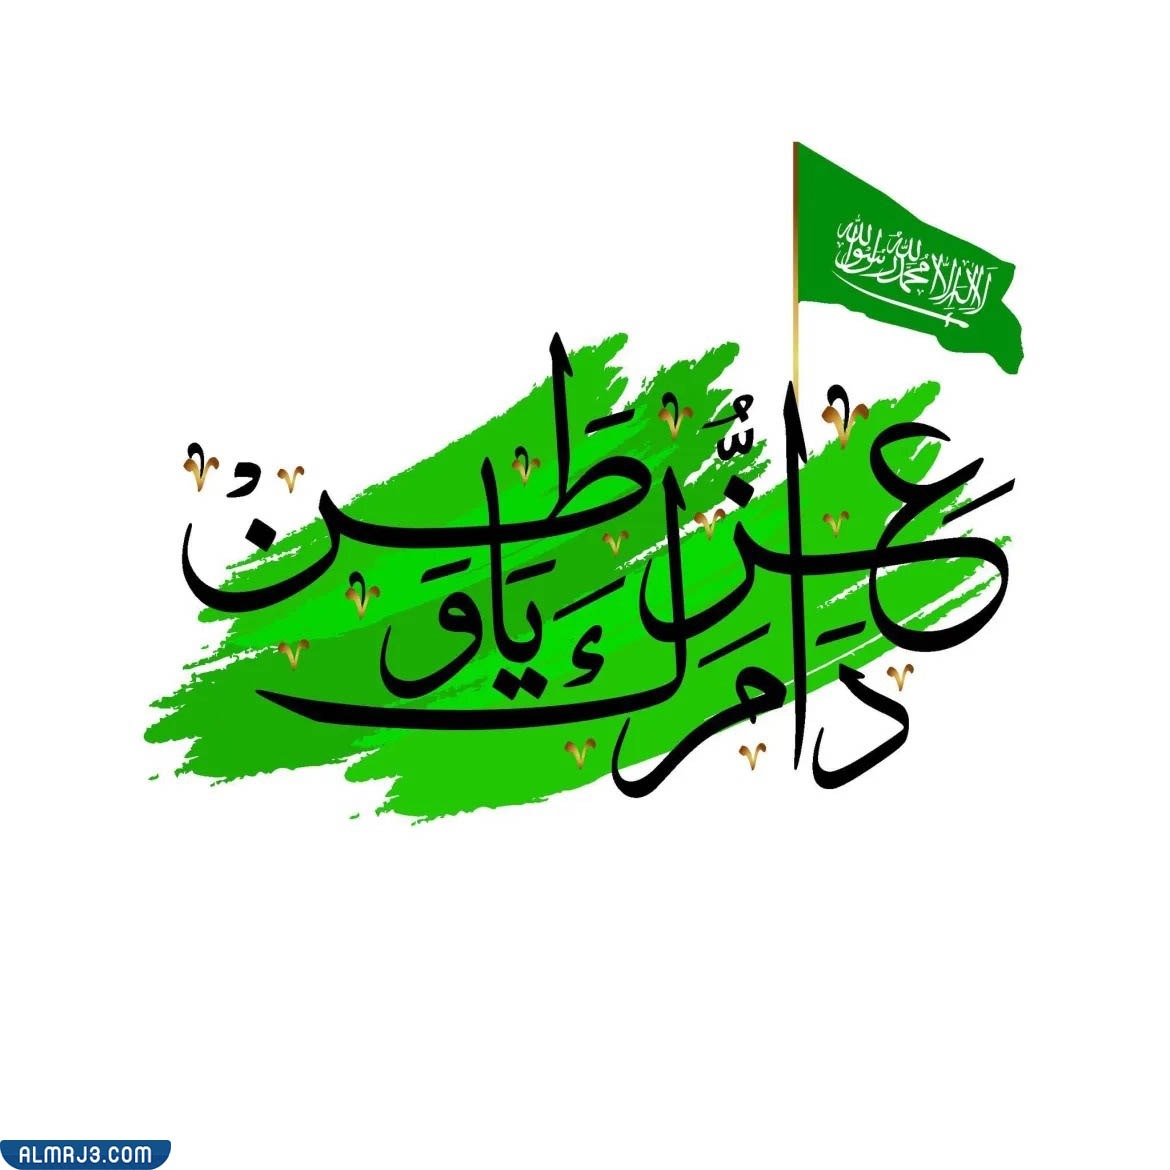 مخطوطة اليوم الوطني للمملكة العربية السعودية 92